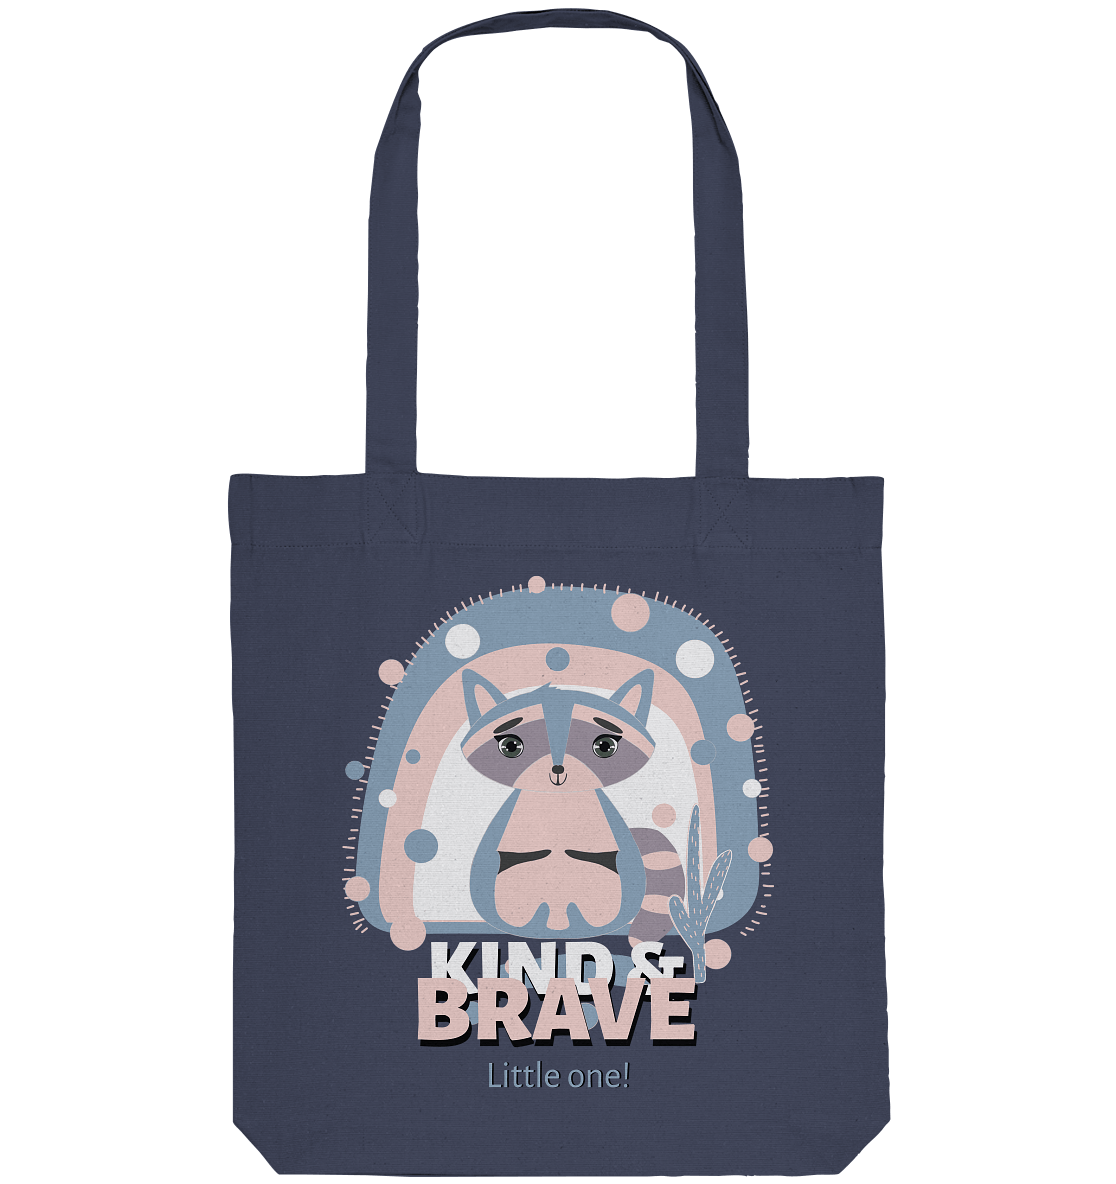 Waschbär Stofftasche Tote-Bag mit Waschbär Print Kind & Brave Little One!